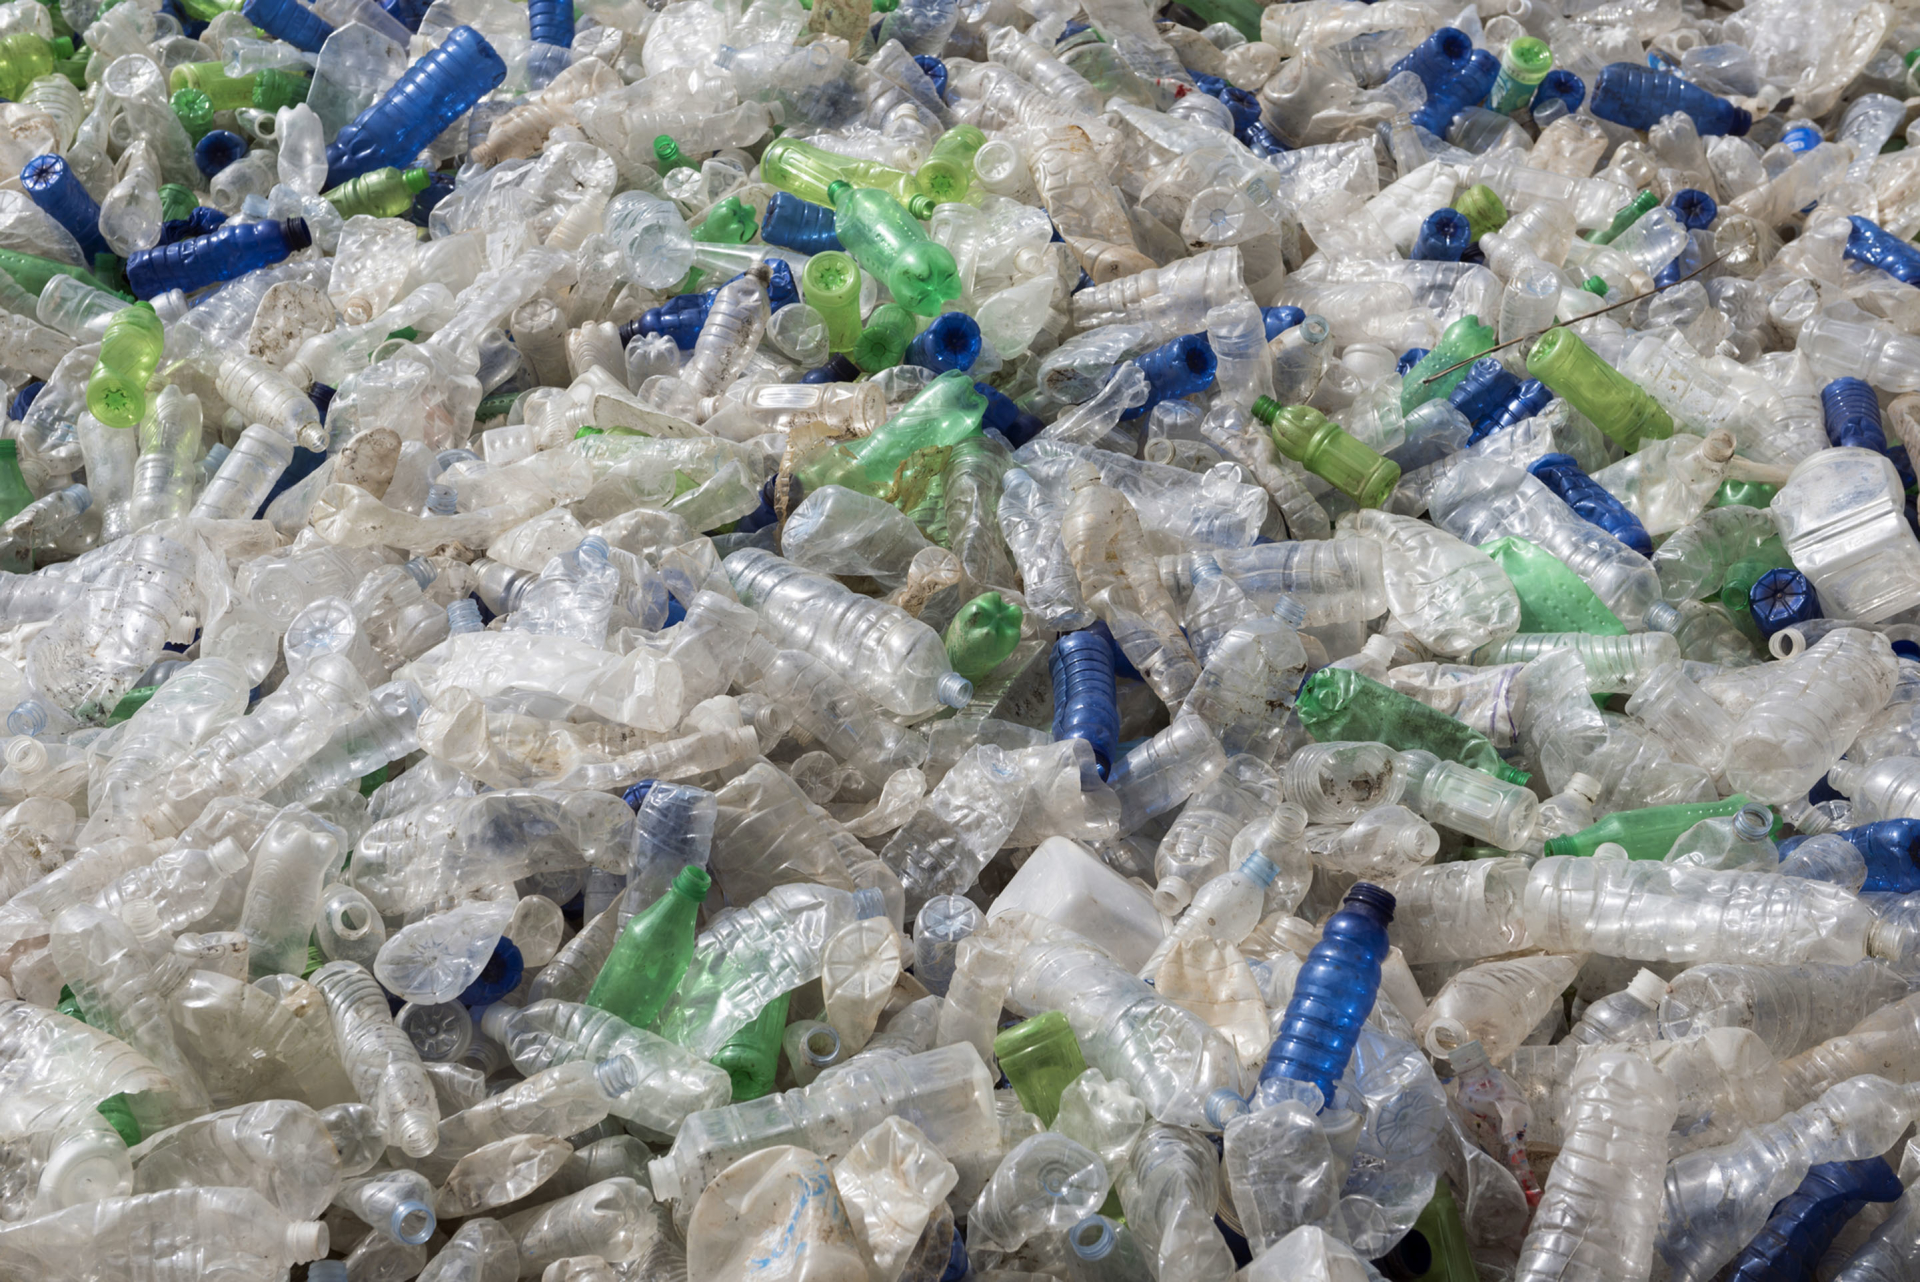 À Guayaquil, dans le sud-ouest de l'Équateur, les usagers du réseau de bus peuvent financer leurs titres de transport en recyclant des bouteilles en plastique grâce aux machines de collecte mises à leur disposition. © Joel Carillet/IStock.com